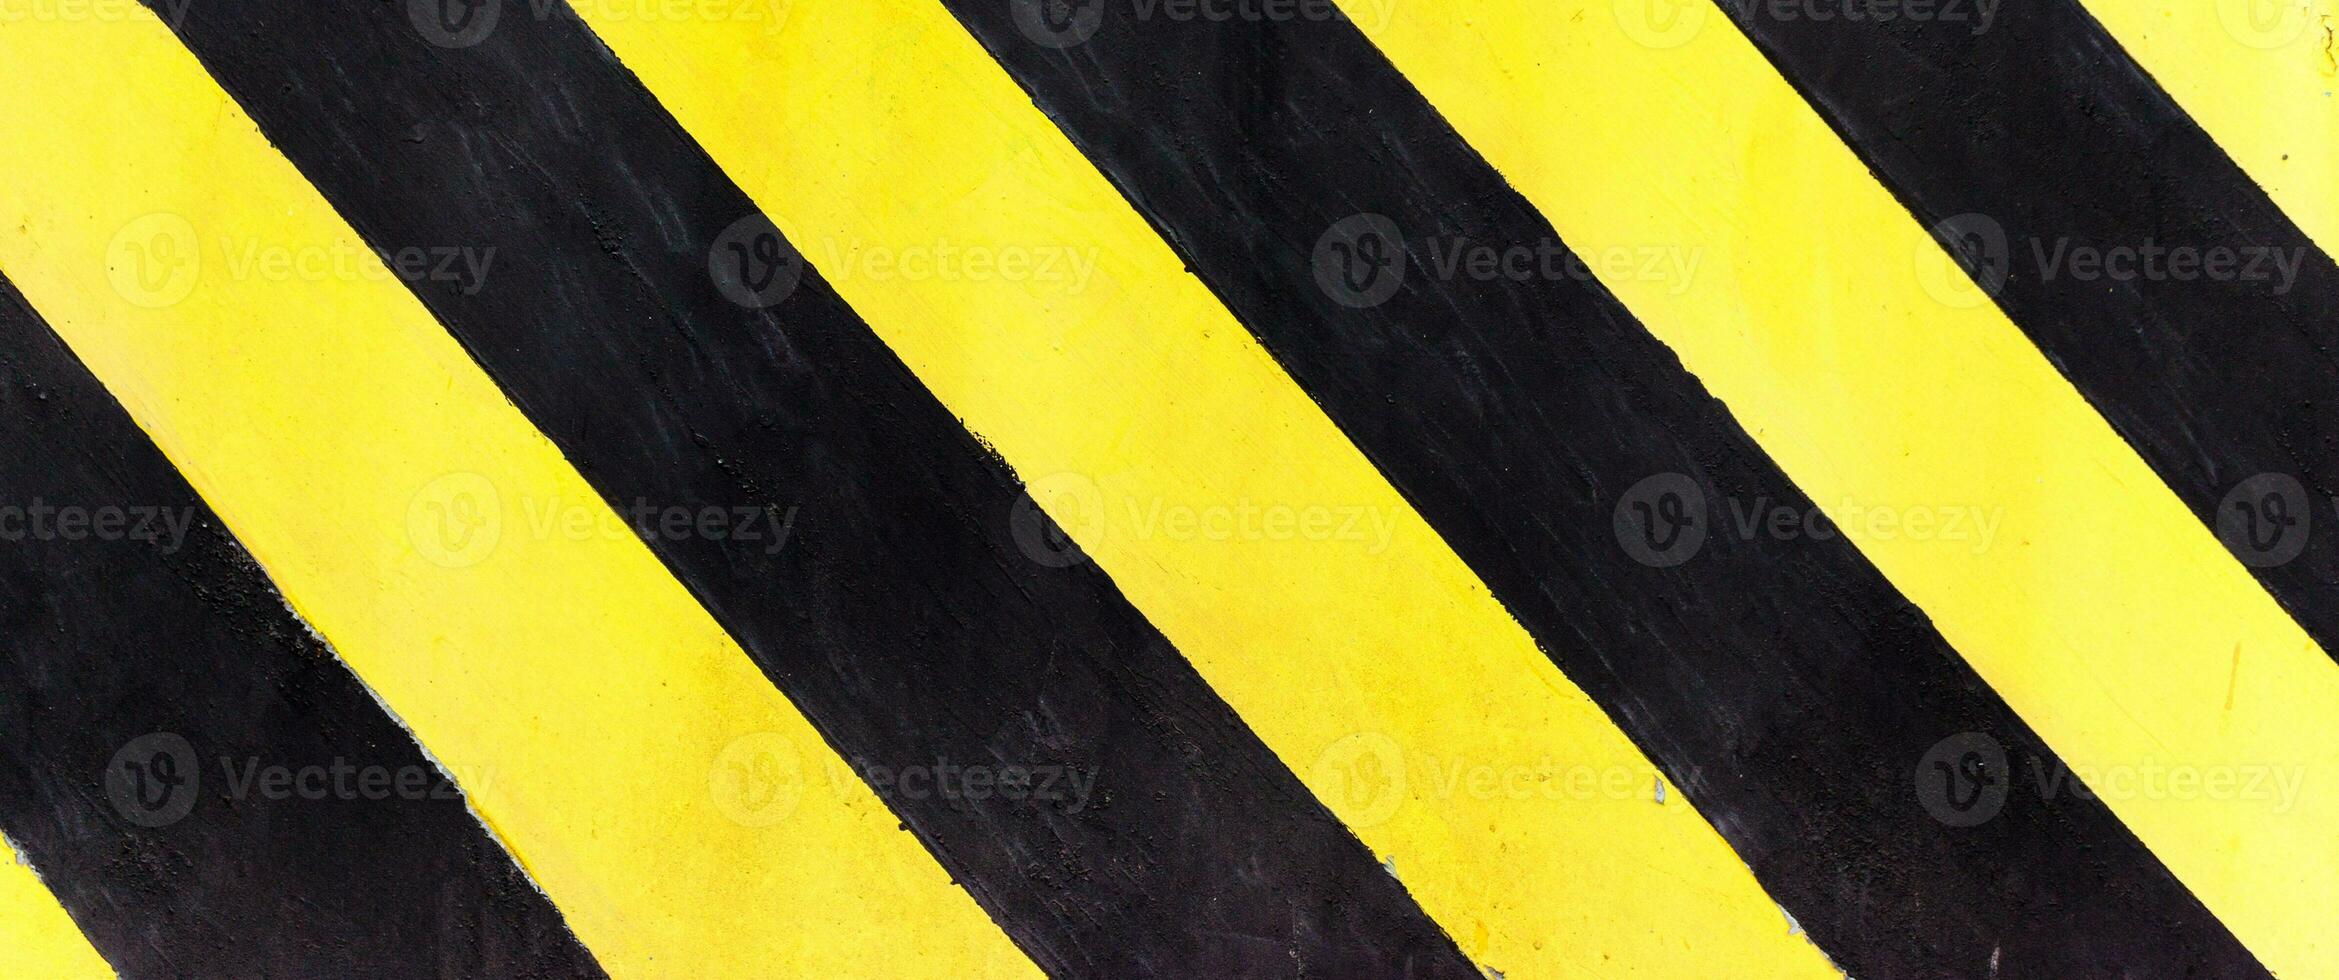 säkerhet Ränder på konstruktion webbplats, svart och gul under konstruktion tecken över en grunge textur, topp se foto